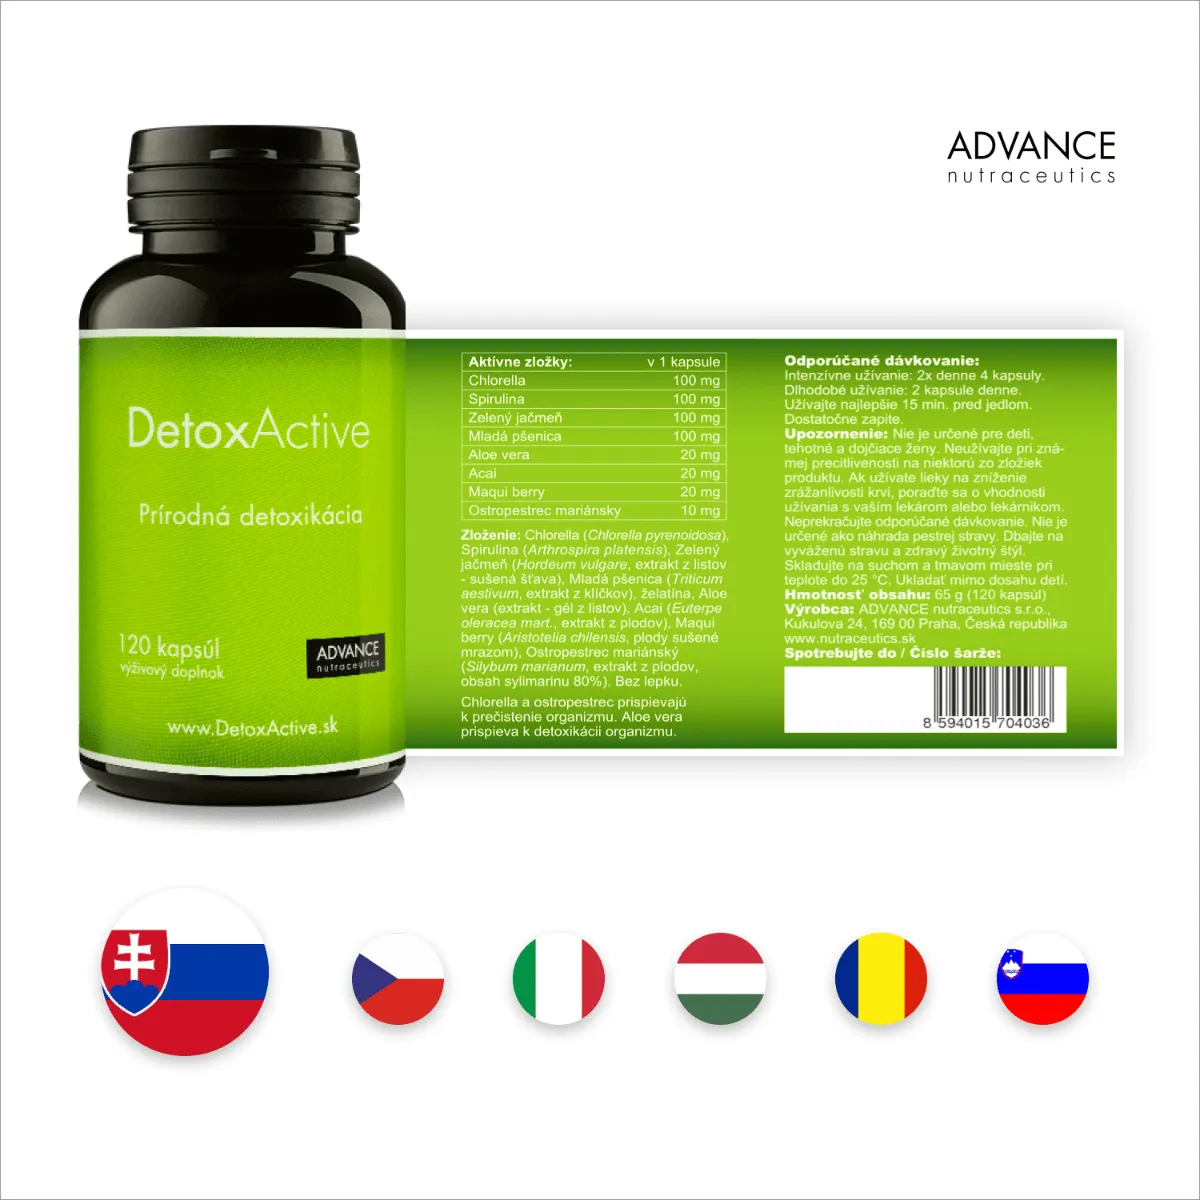 DetoxActive 120 cps. – prírodná detoxikácia 1×120 cps, výživový doplnok